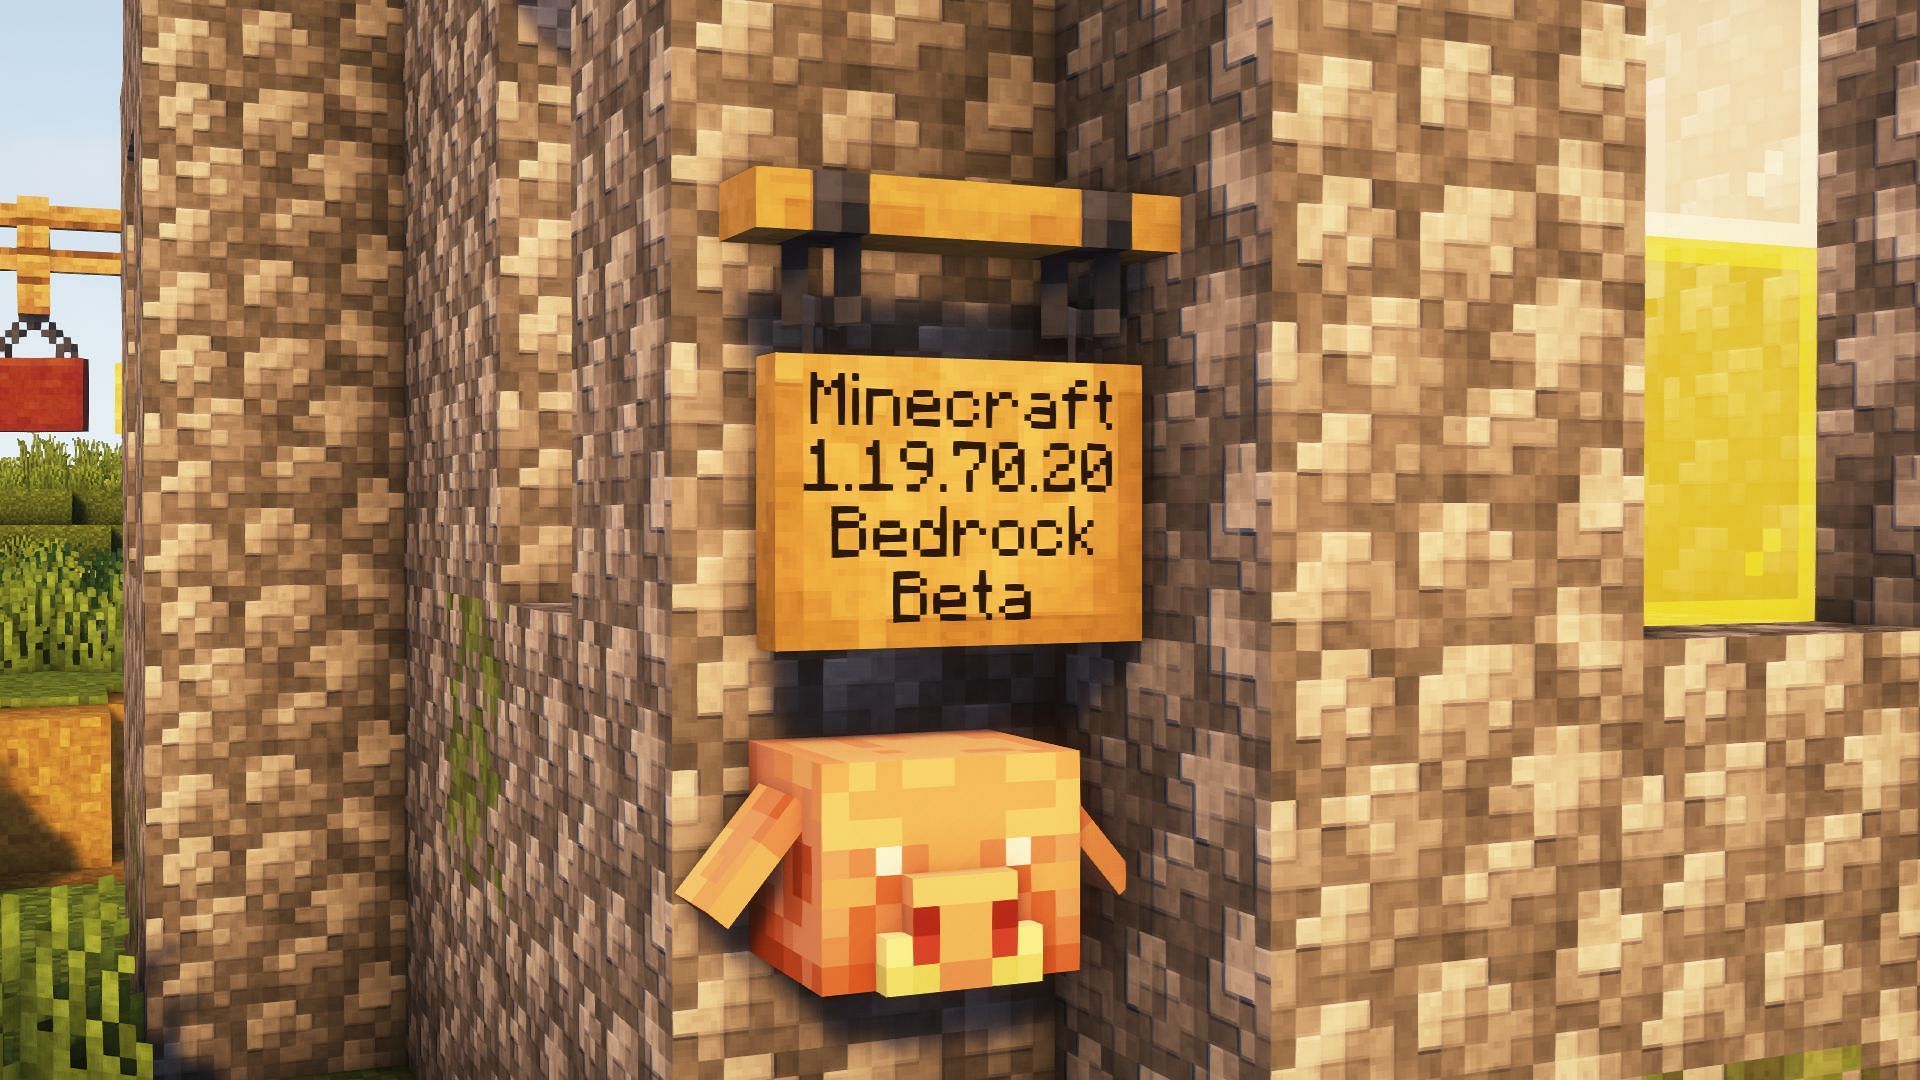 Minecraft bedrock beta 1.19.70.20 has been released (Image via Mojang)